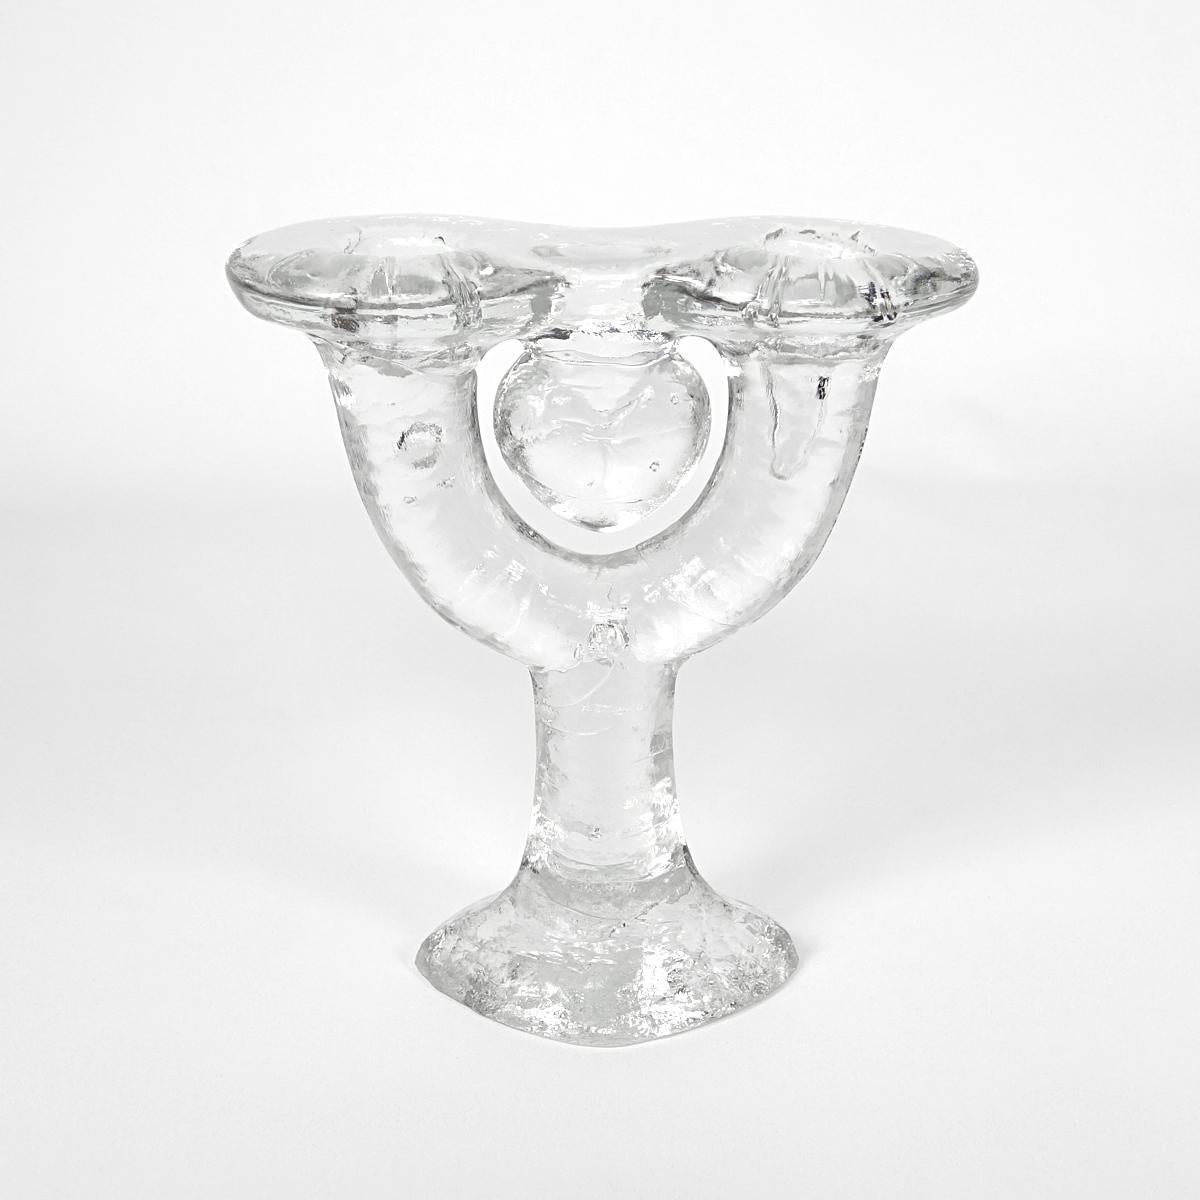 Ce chandelier en verre glacé semble en effet être fait de glace. Les bulles et les irrégularités du verre font partie du design et assurent un aspect naturel et authentique.
Une fois rempli de bougies blanches vierges, un vrai bijou pour votre table.